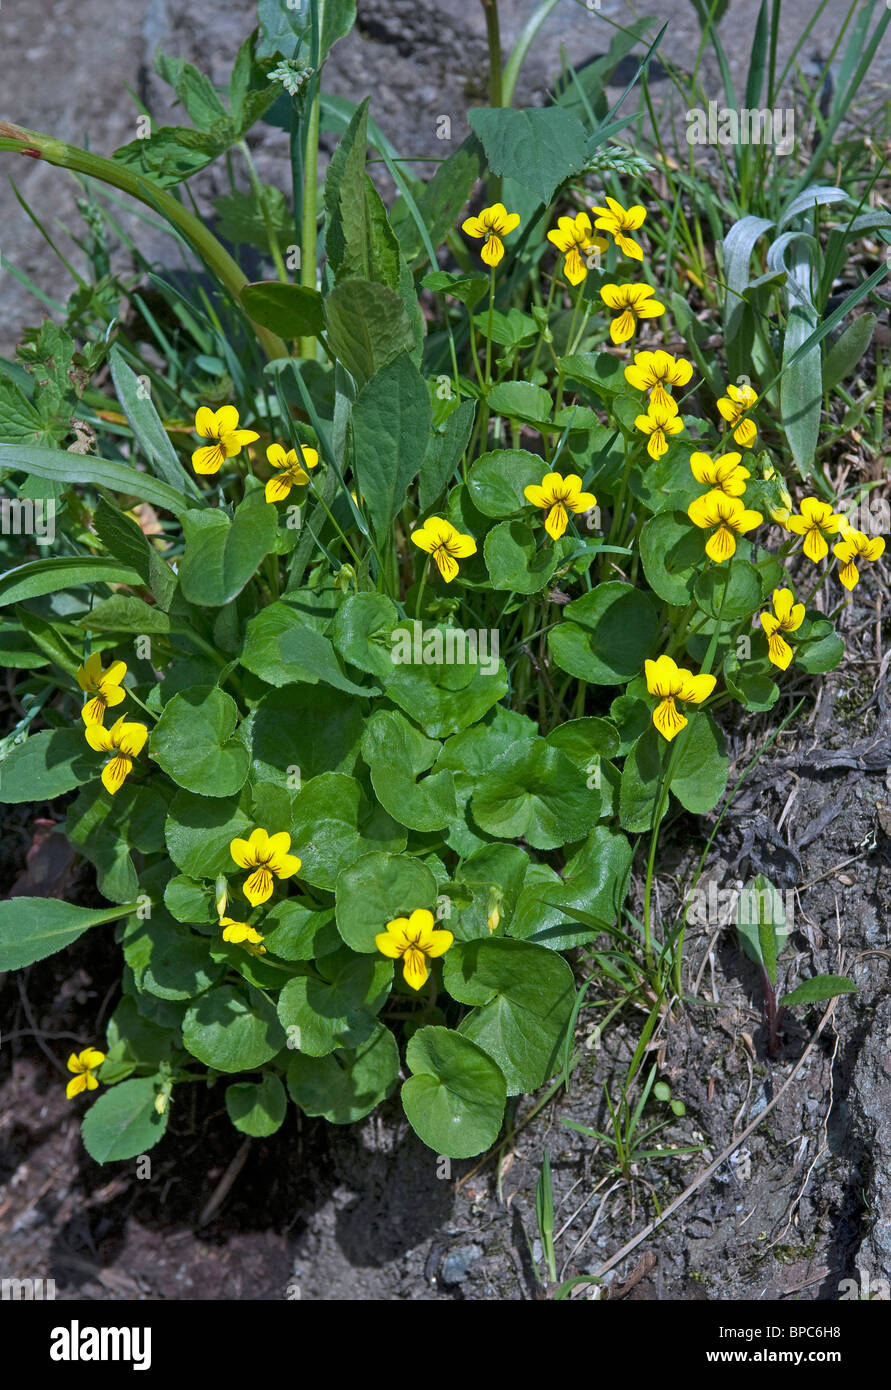 Twoflower Violet (Viola biflora), flowering plant. Stock Photo